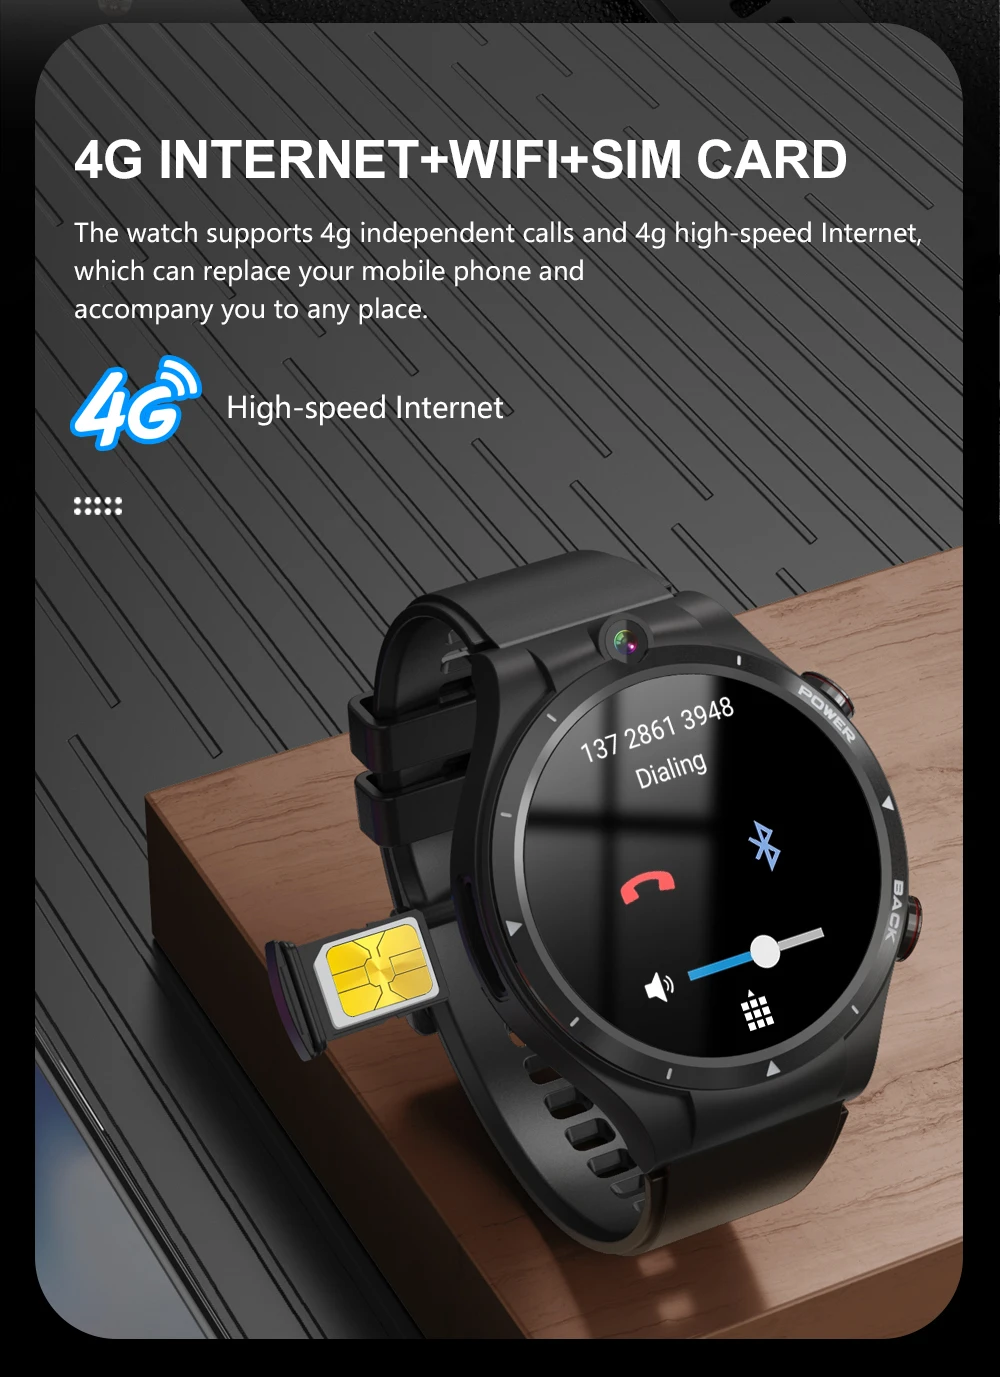 LEMFO LEM15 Smart Watch 4G Android 10.7 Kol Saati Telefon - Helio P22, 4GB RAM + 128GB ROM, LTE Akıllı Saat